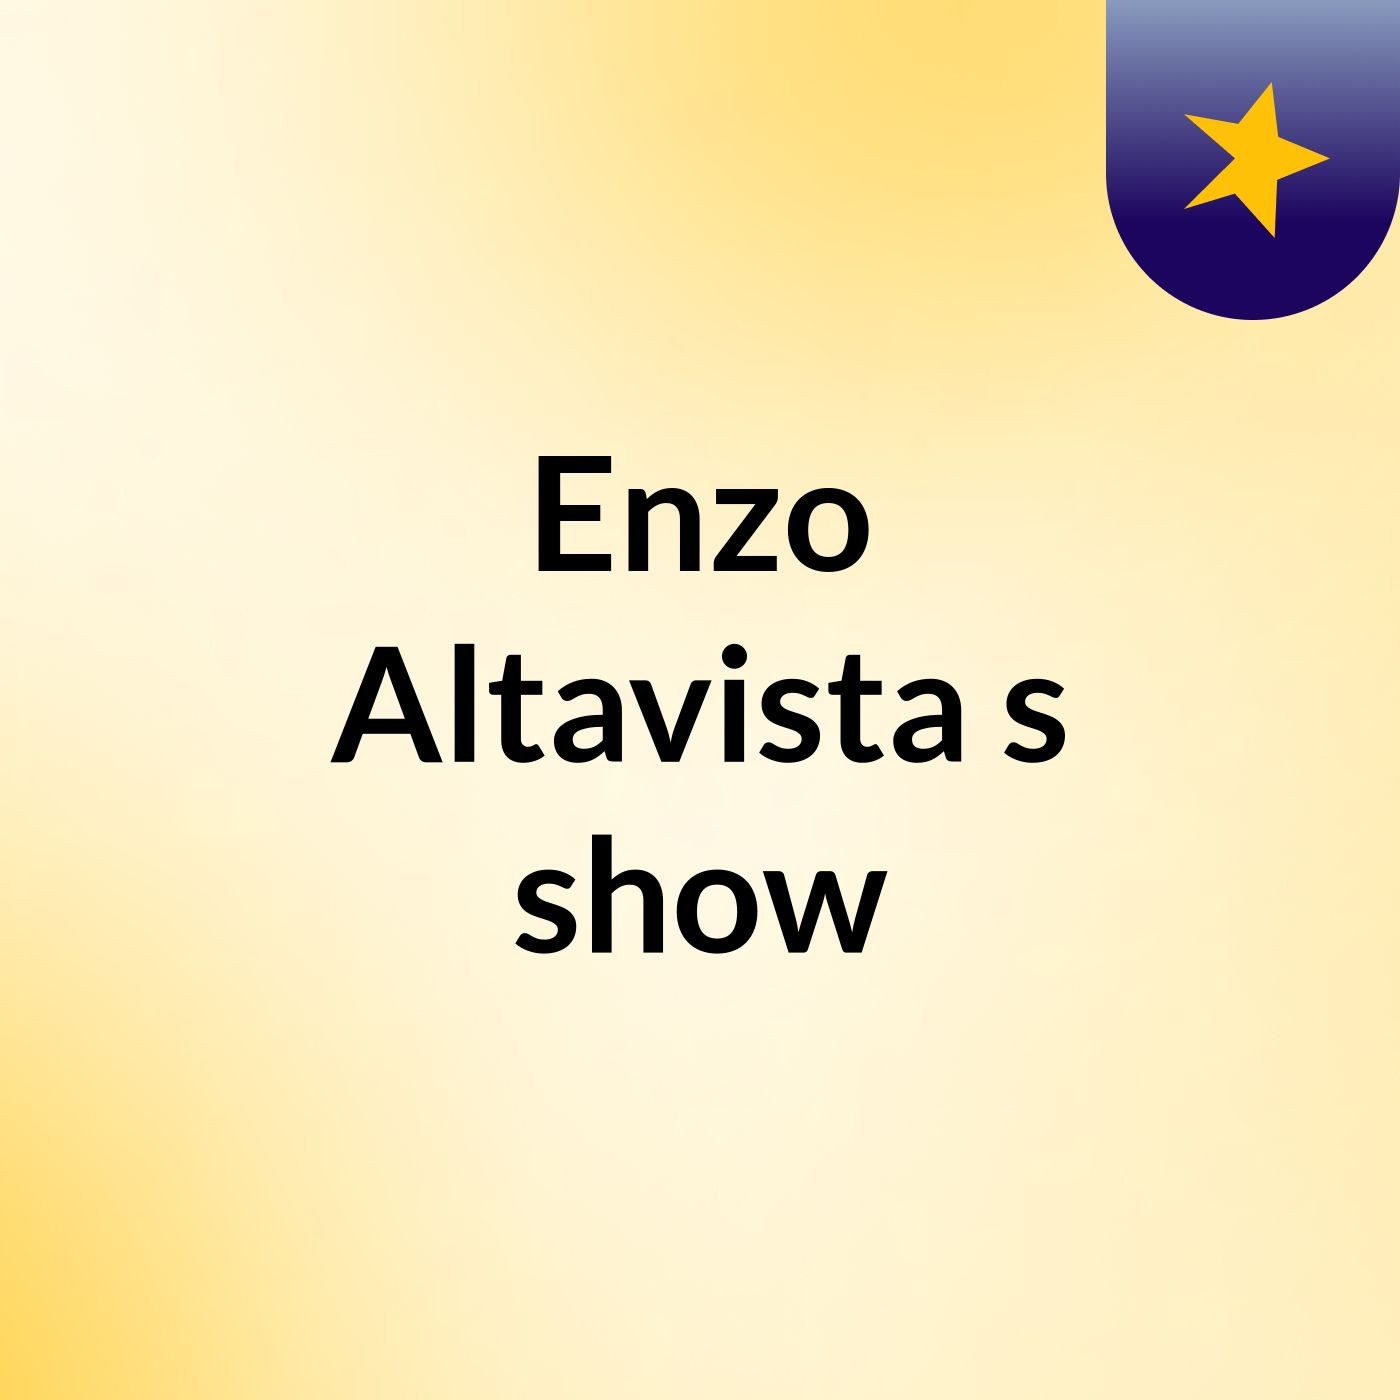 Enzo Altavista's show